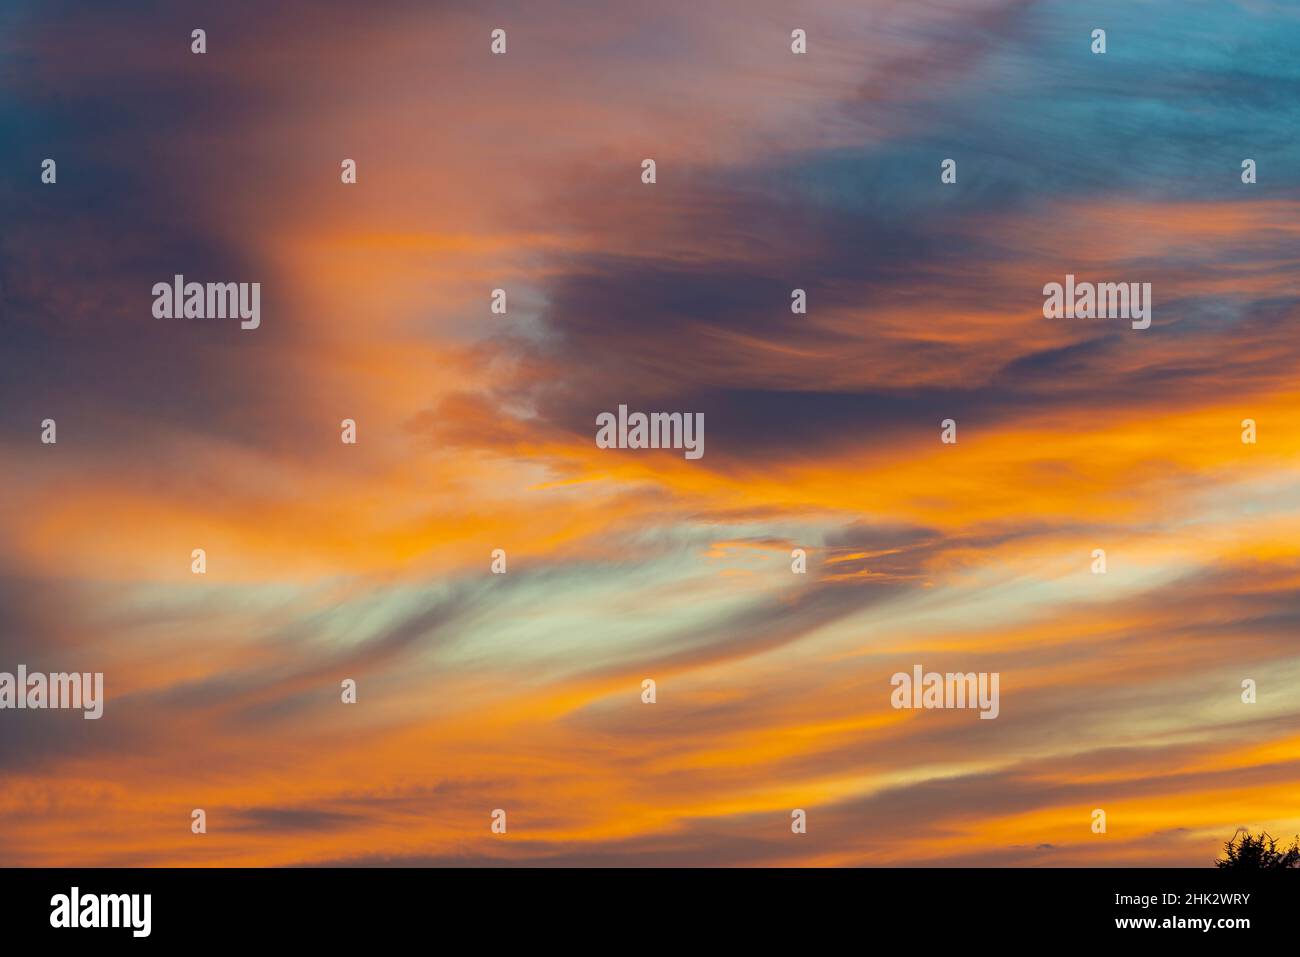 USA, Idaho. Hinterleuchtete Cirrus-Wolken können einen herrlichen Sonnenuntergang machen. Stockfoto